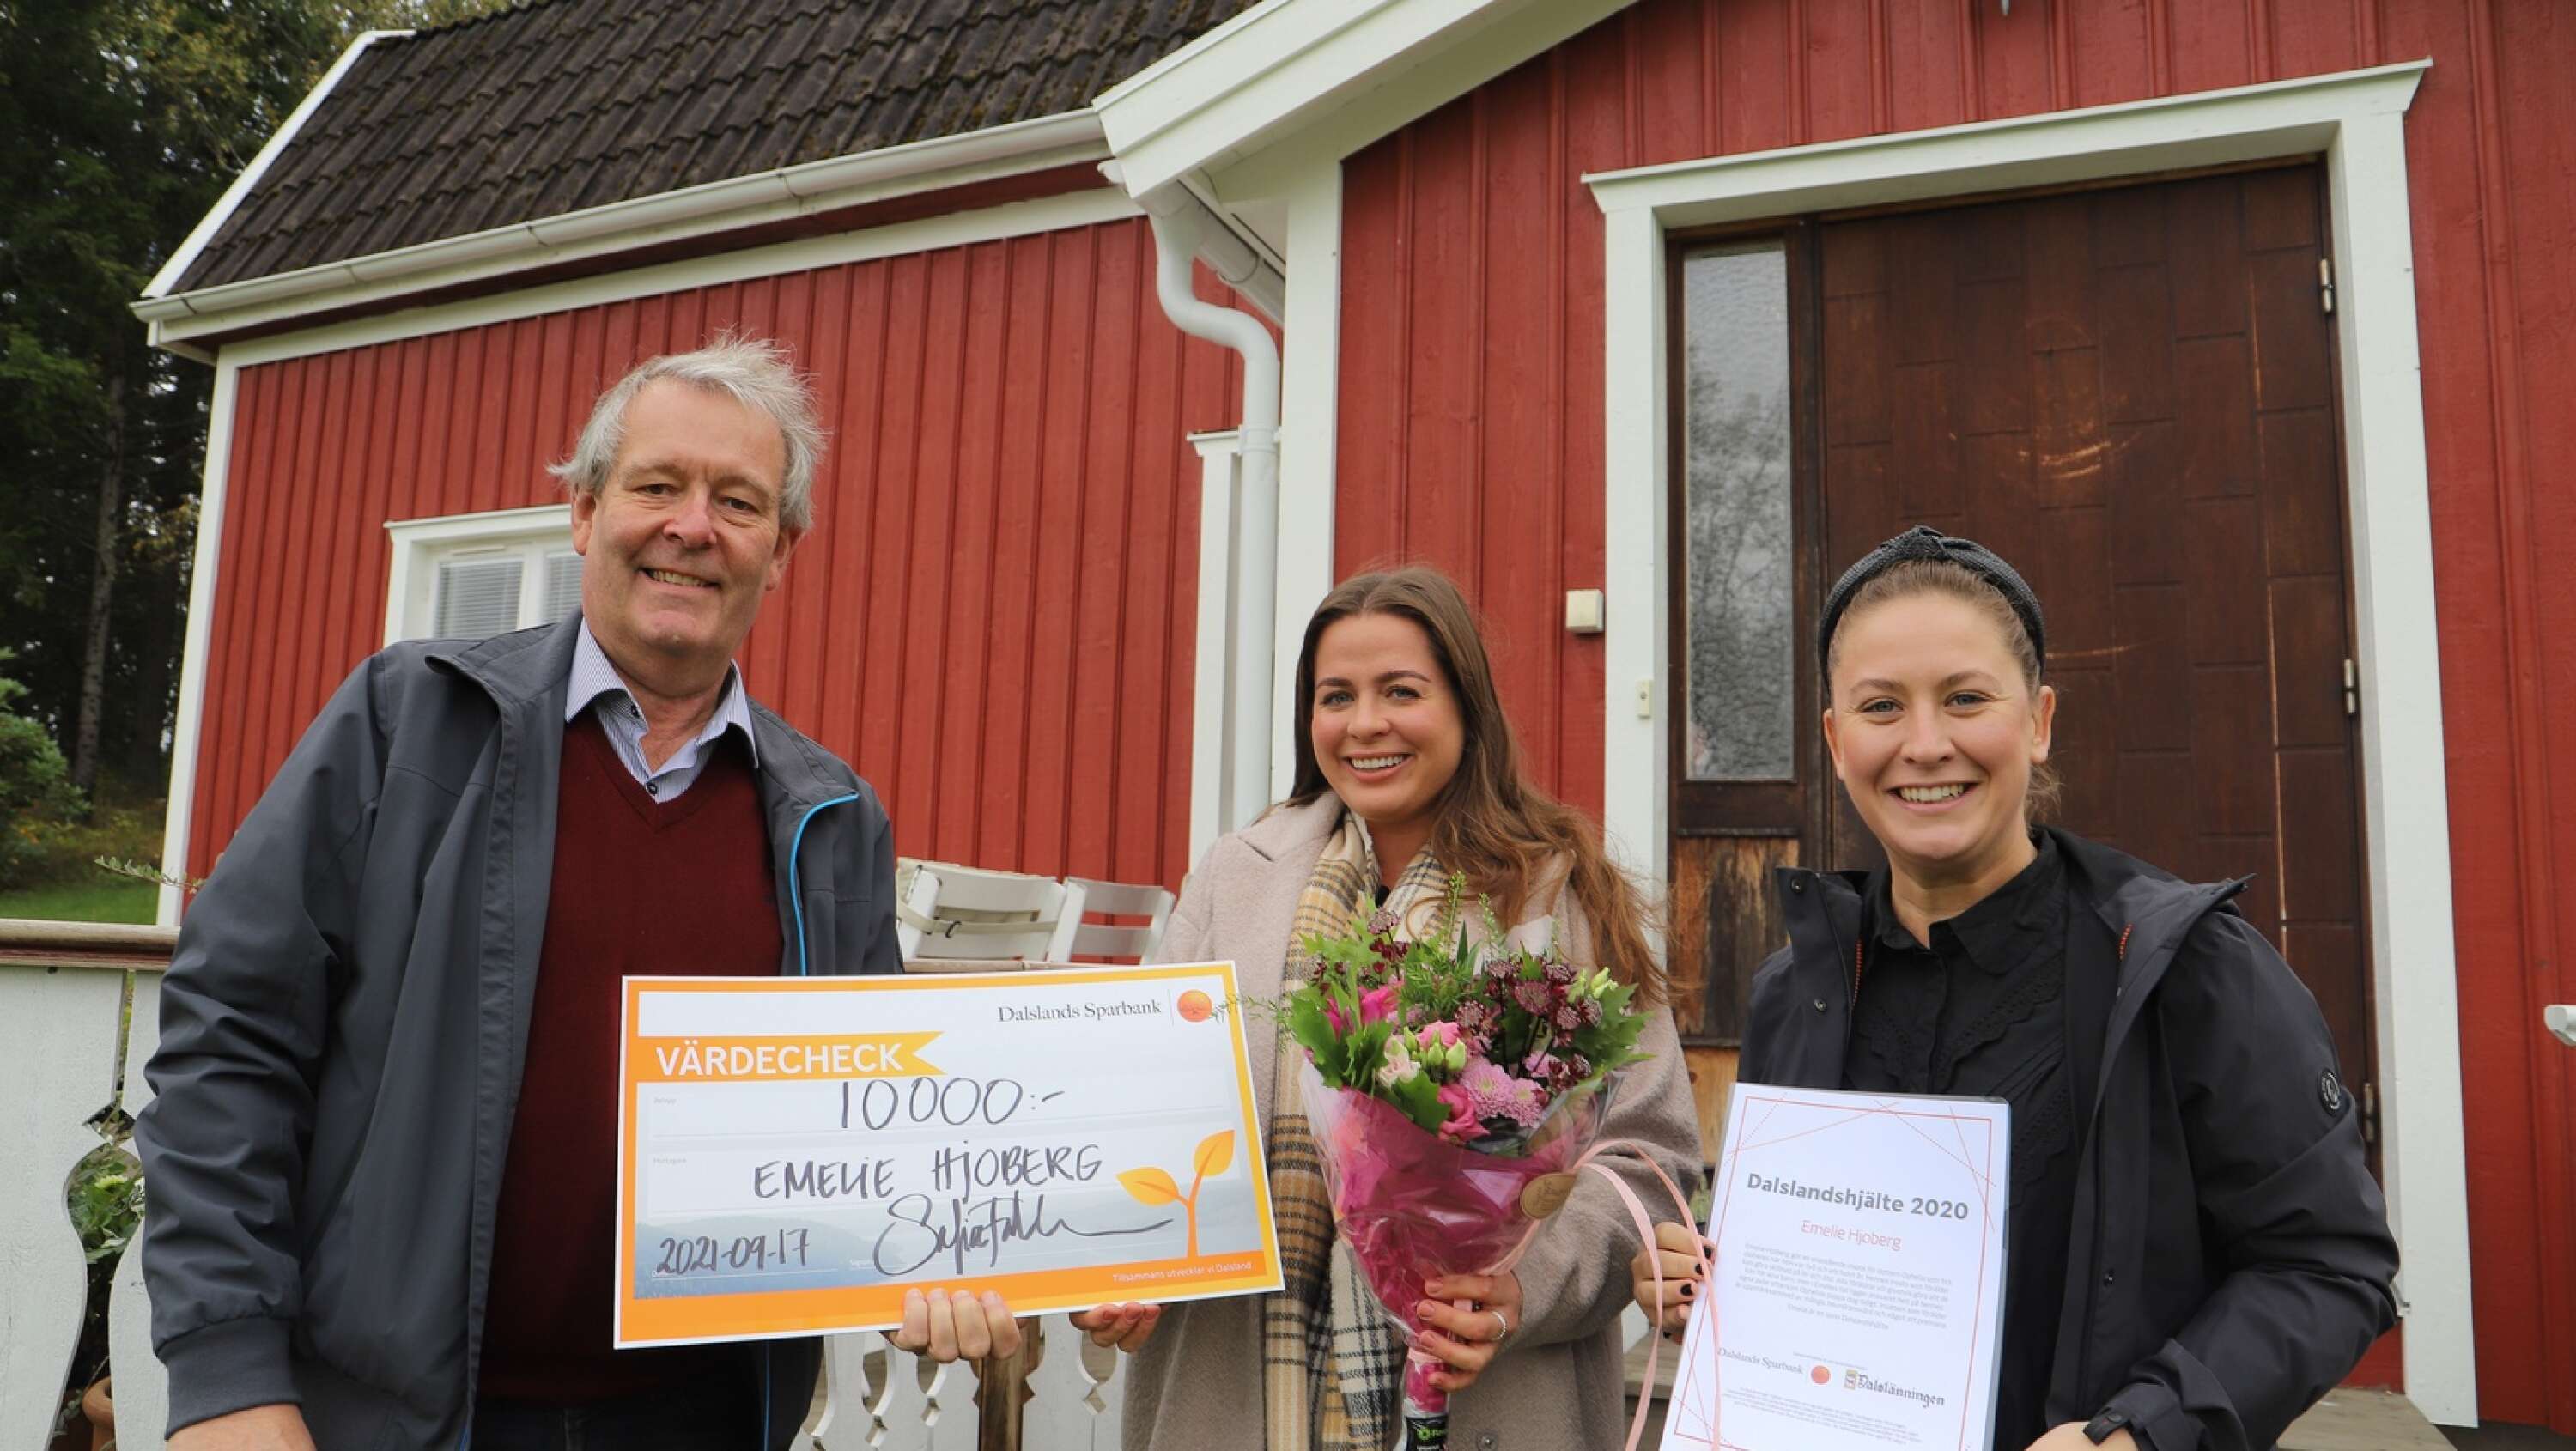 Som Dalslandshjälte 2020 fick Emelie Hjoberg, prischeck, diplom och blommor, när hon uppvaktades av Thomas Wallin, Dalslänningen, och Sofia Falkman, Dalslands Sparbank.